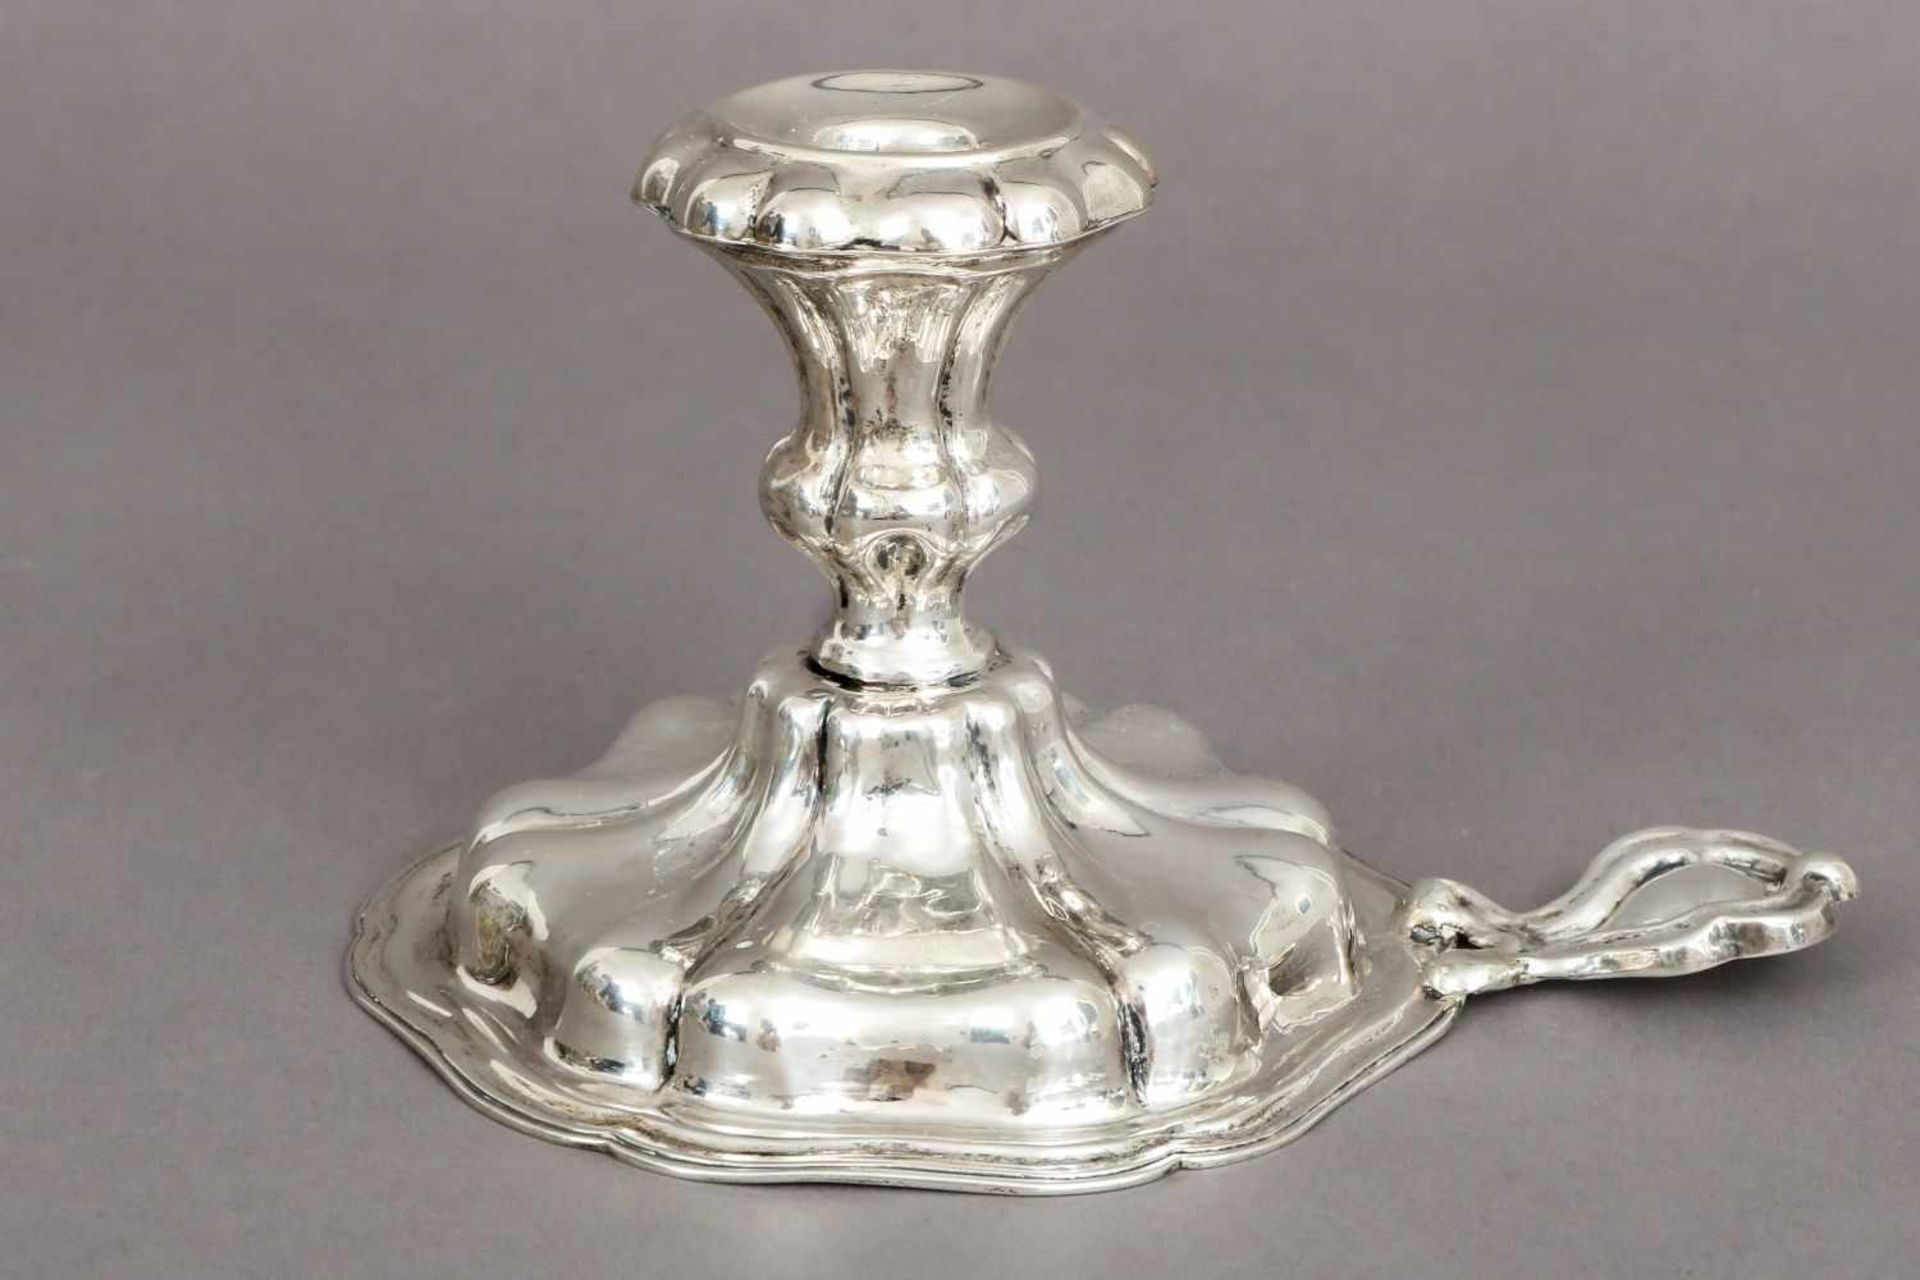 Silber HandleuchterÖsterreich, wohl um 1830, barockisierende Form mit Vasentülle auf passigem,